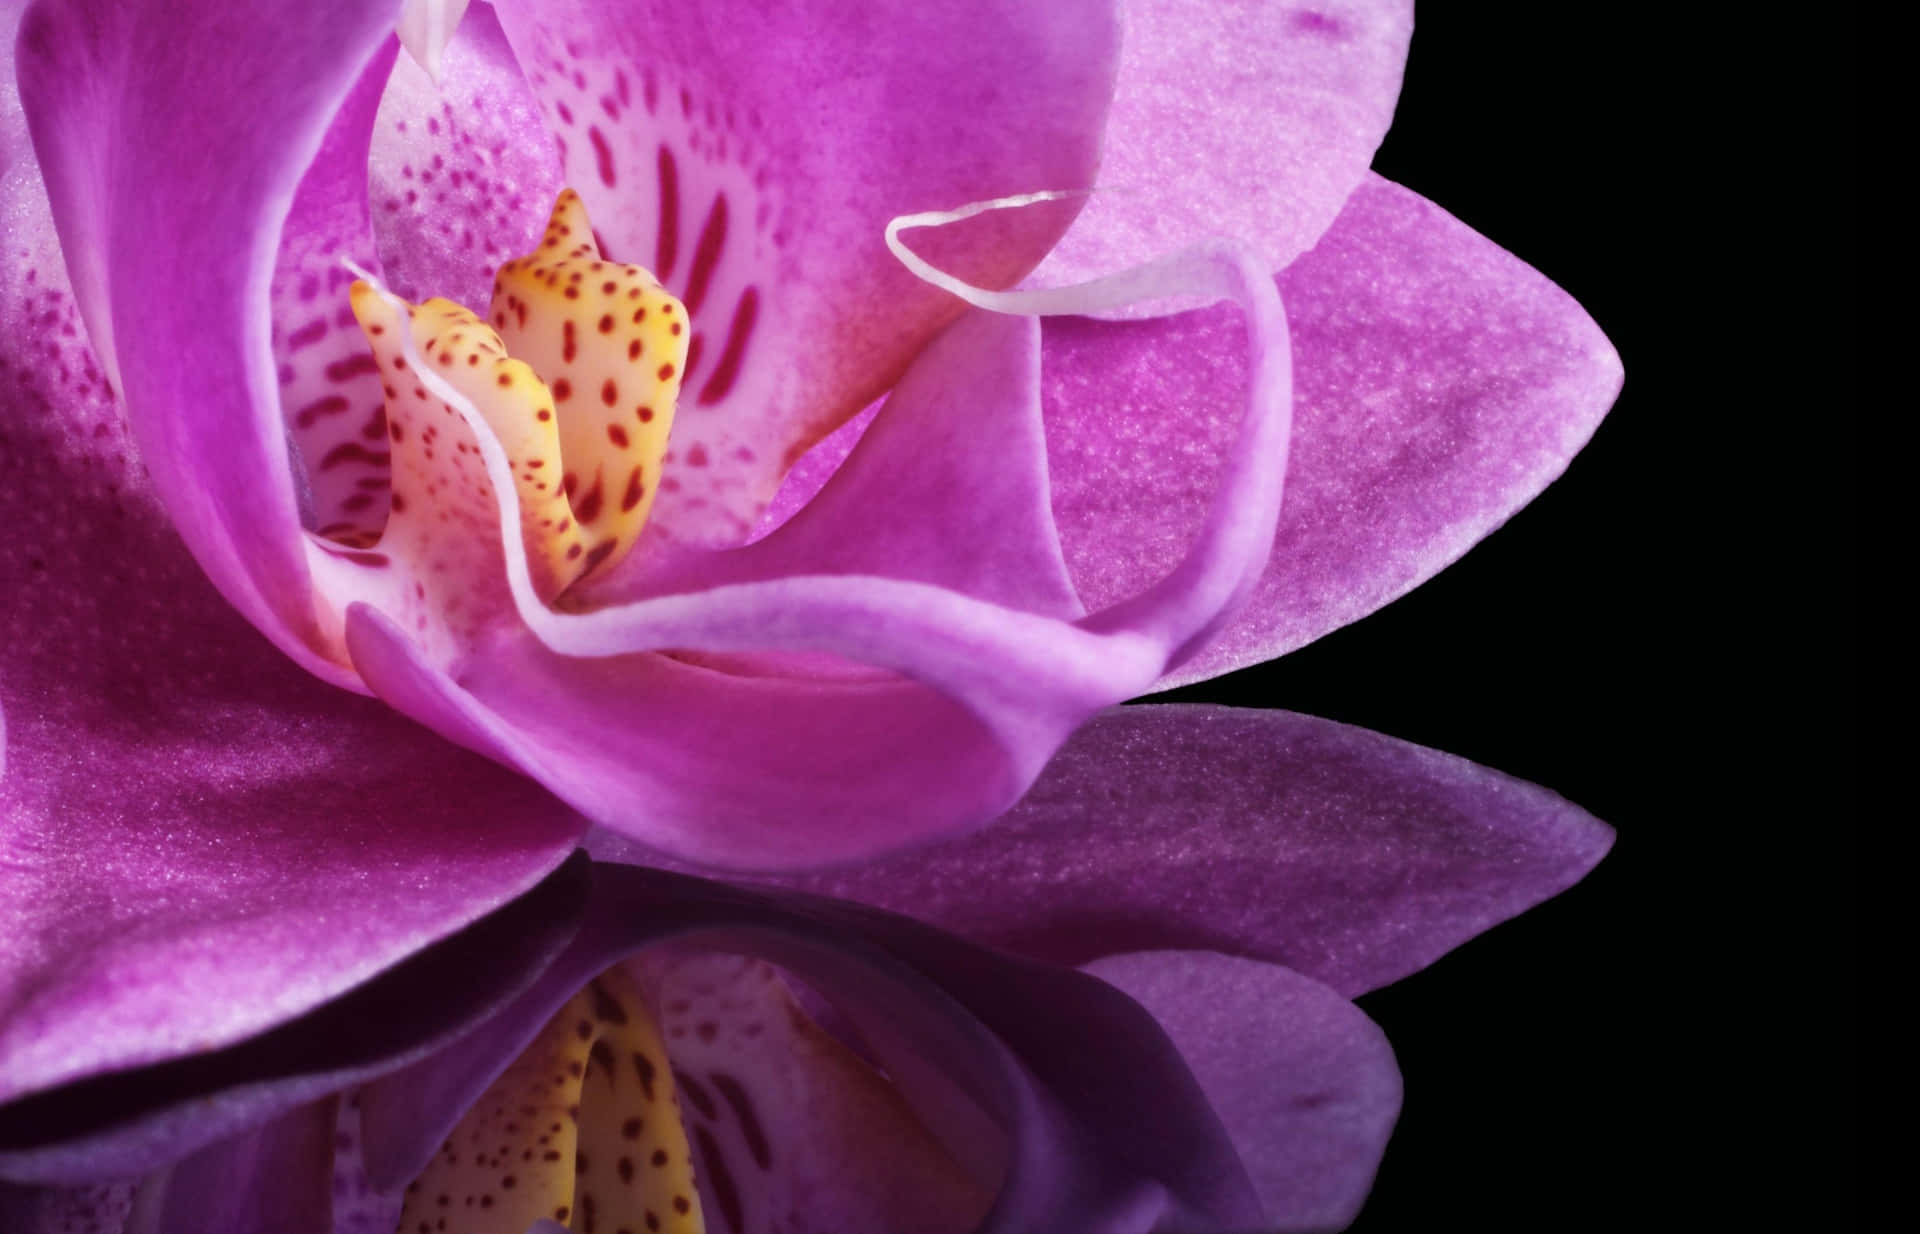 Enhelt Fantastiskt Vacker Orkidé I Sin Naturliga Miljö.